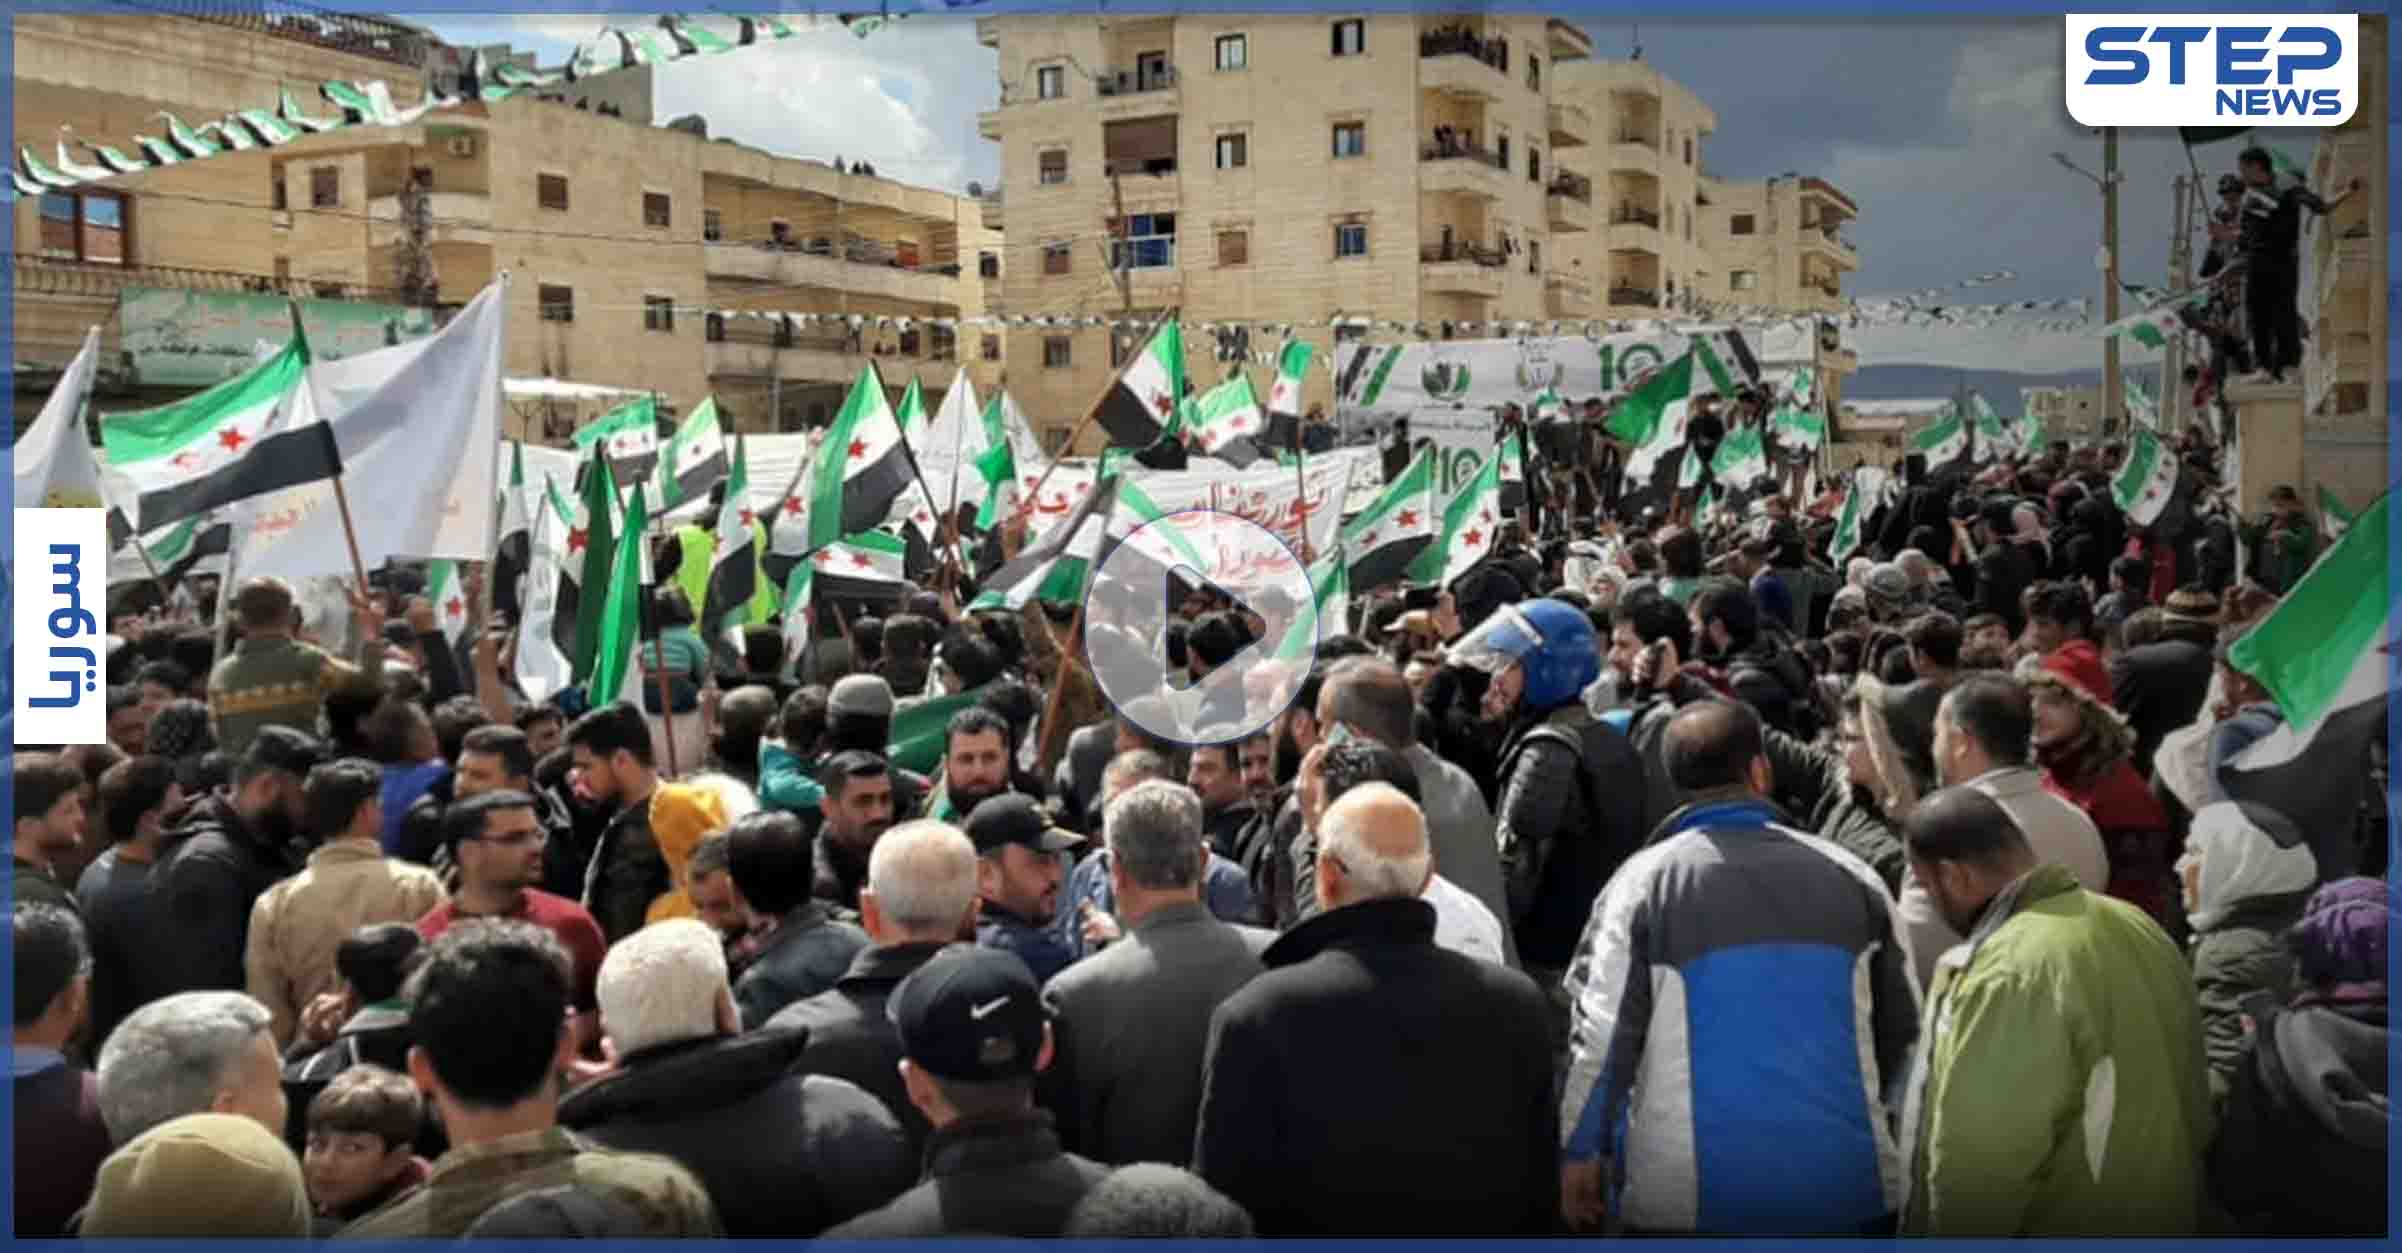 مظاهرة في مدينة عفرين بريف حلب تأكيداً على استمرار الثورة السورية و إسقاط النظام